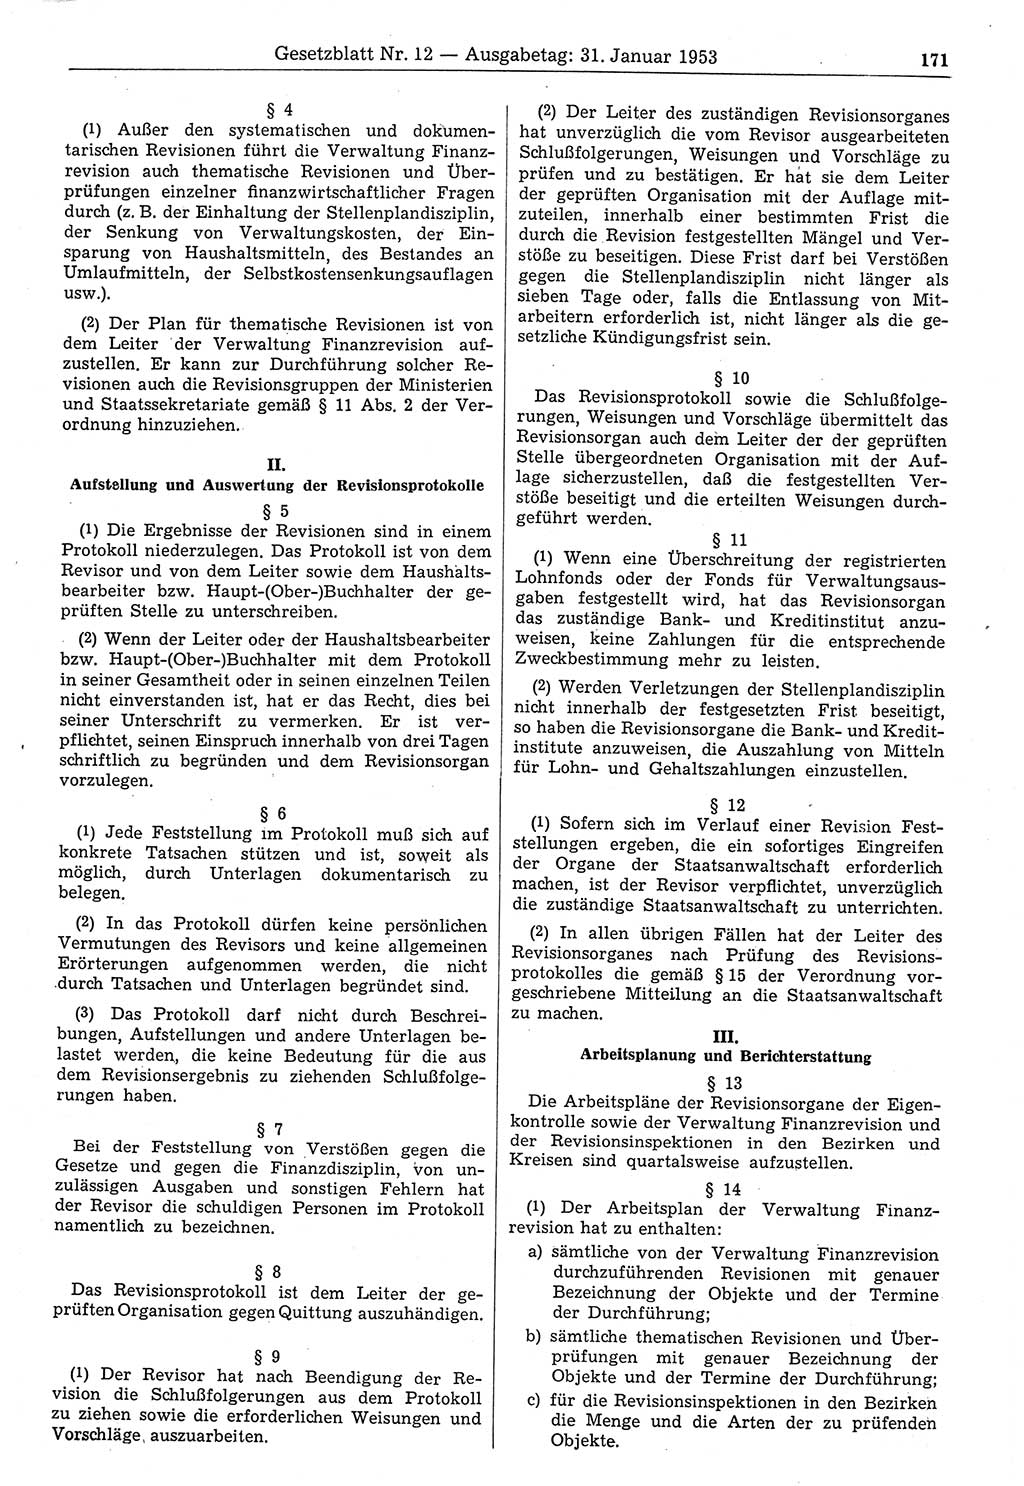 Gesetzblatt (GBl.) der Deutschen Demokratischen Republik (DDR) 1953, Seite 171 (GBl. DDR 1953, S. 171)